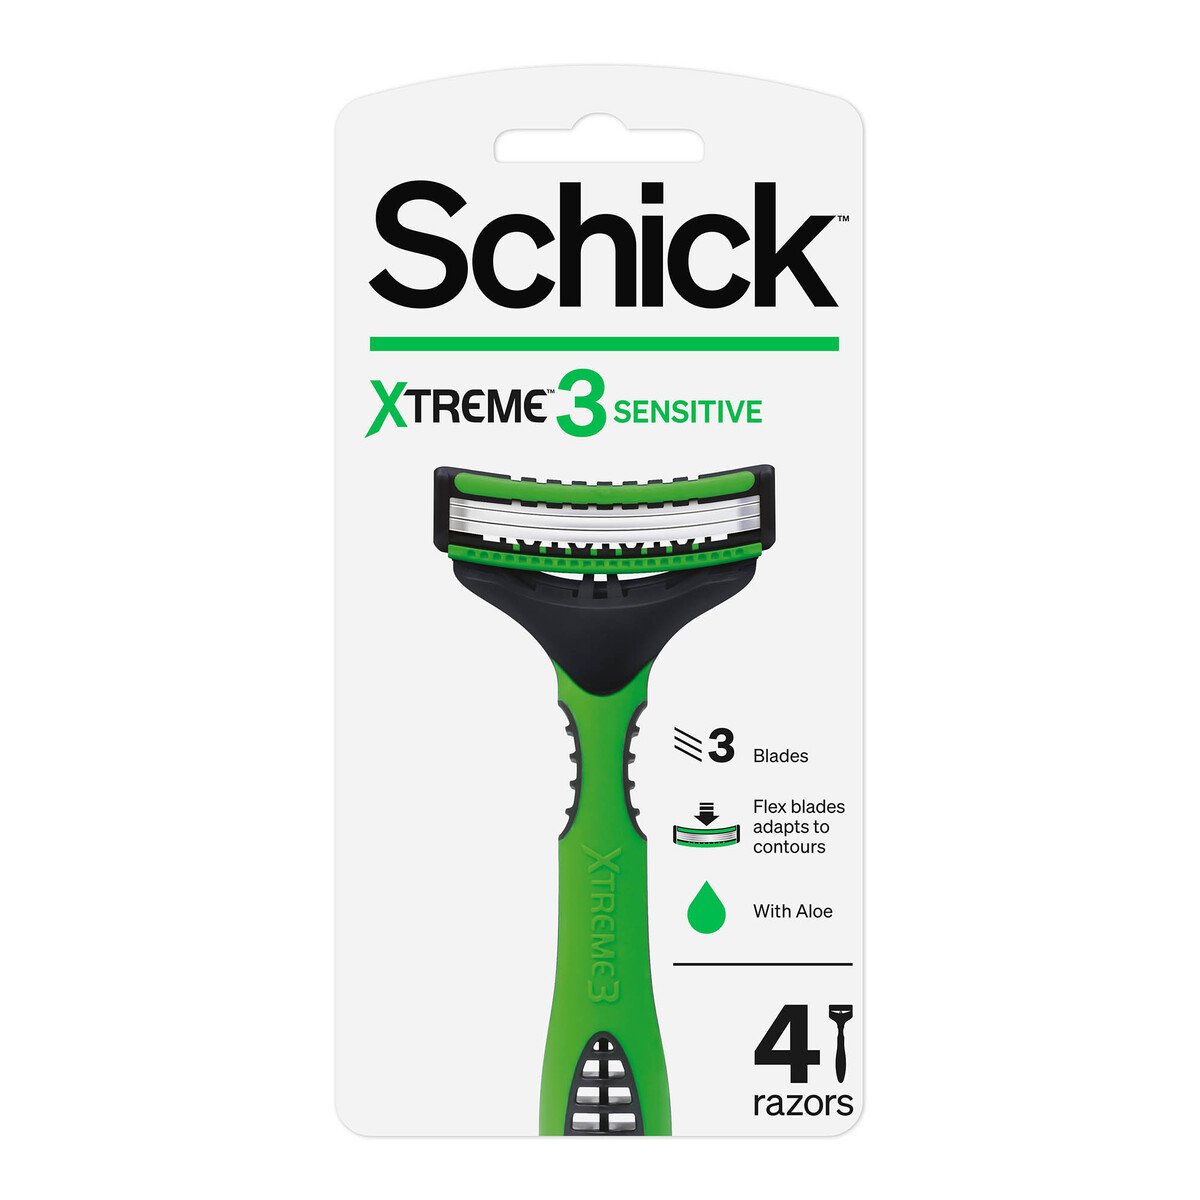 Schick Xtreme 3 Sensitive Disposable Razors 4 pcs